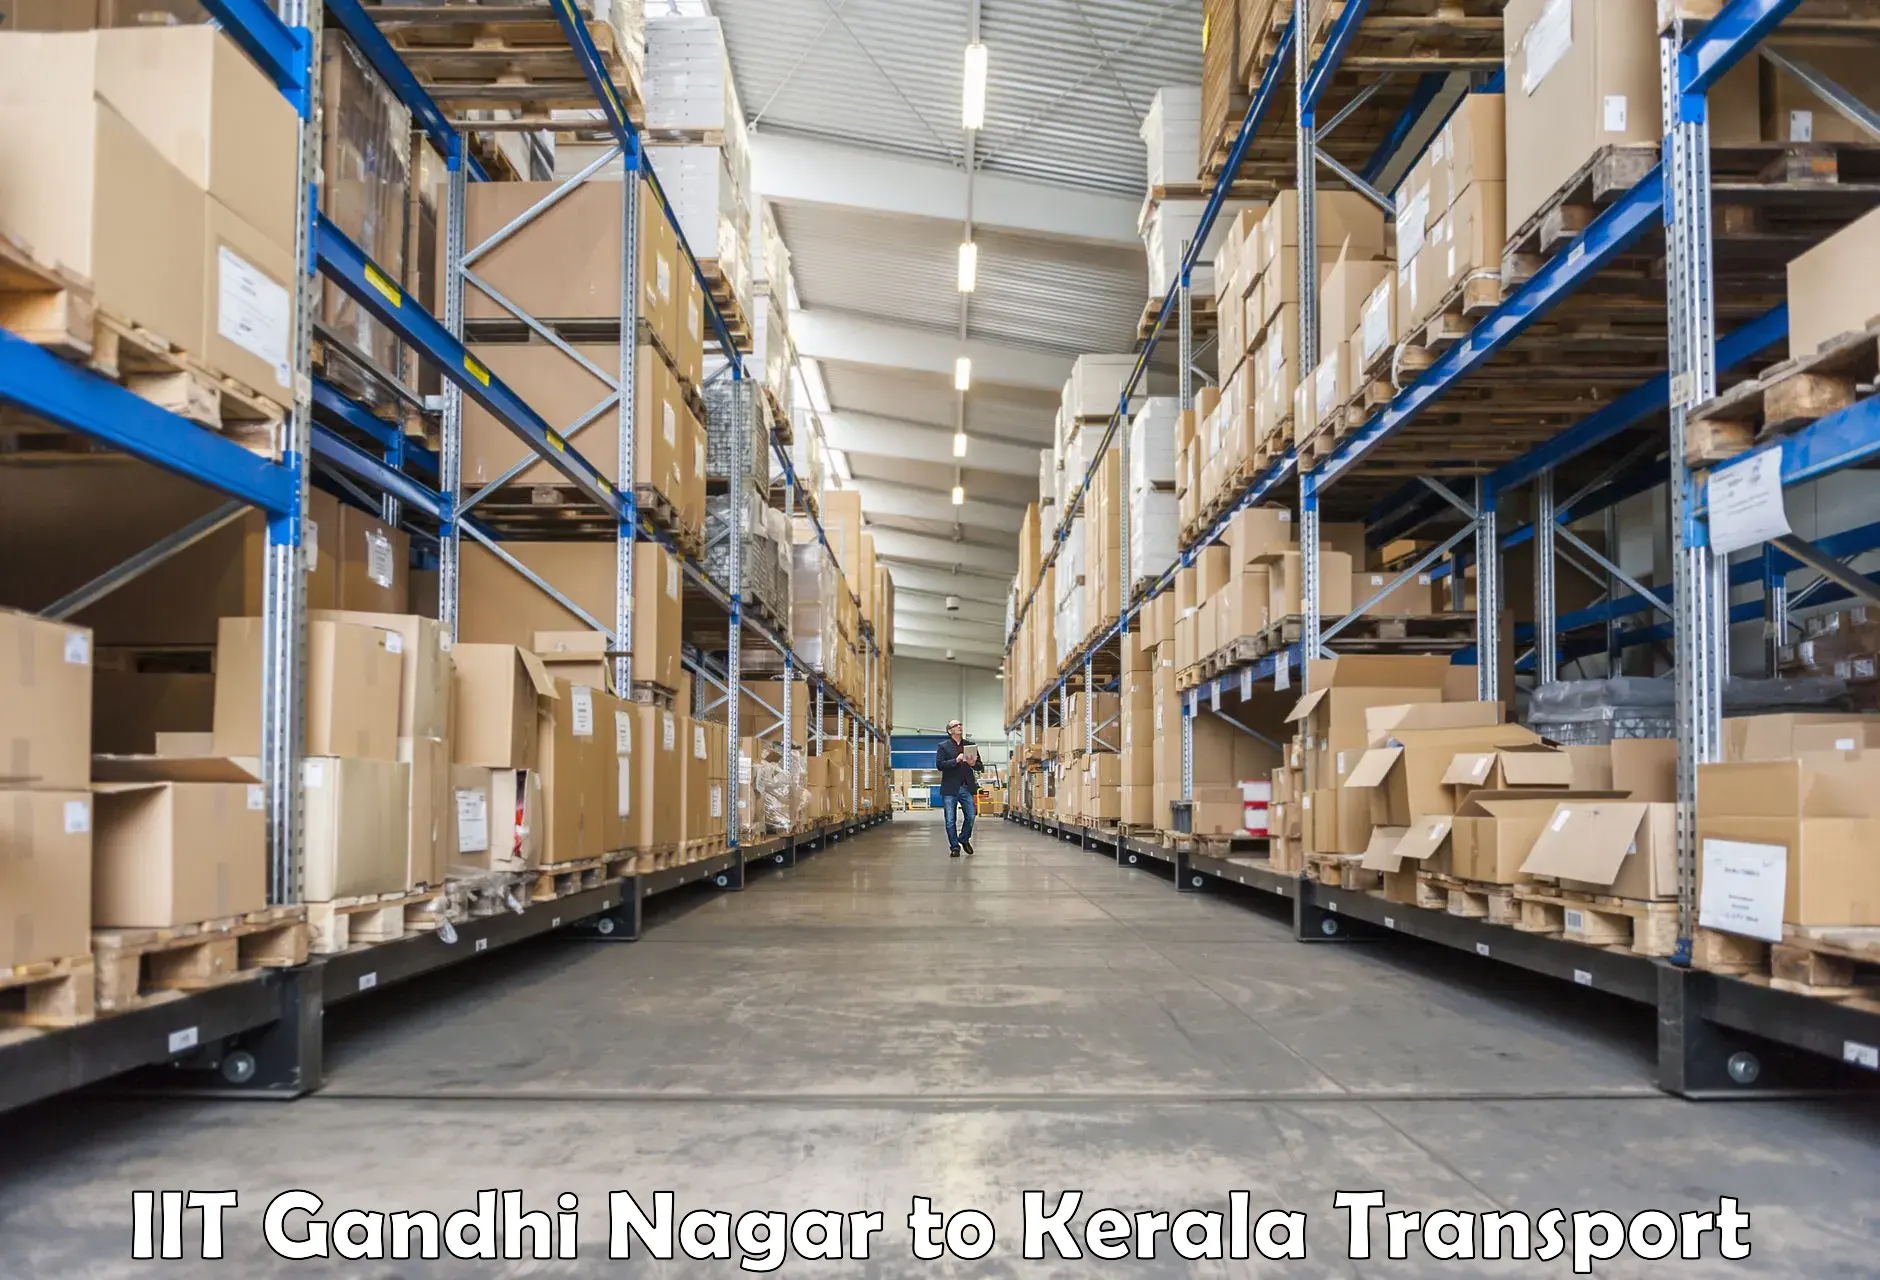 Daily transport service IIT Gandhi Nagar to Edavanna